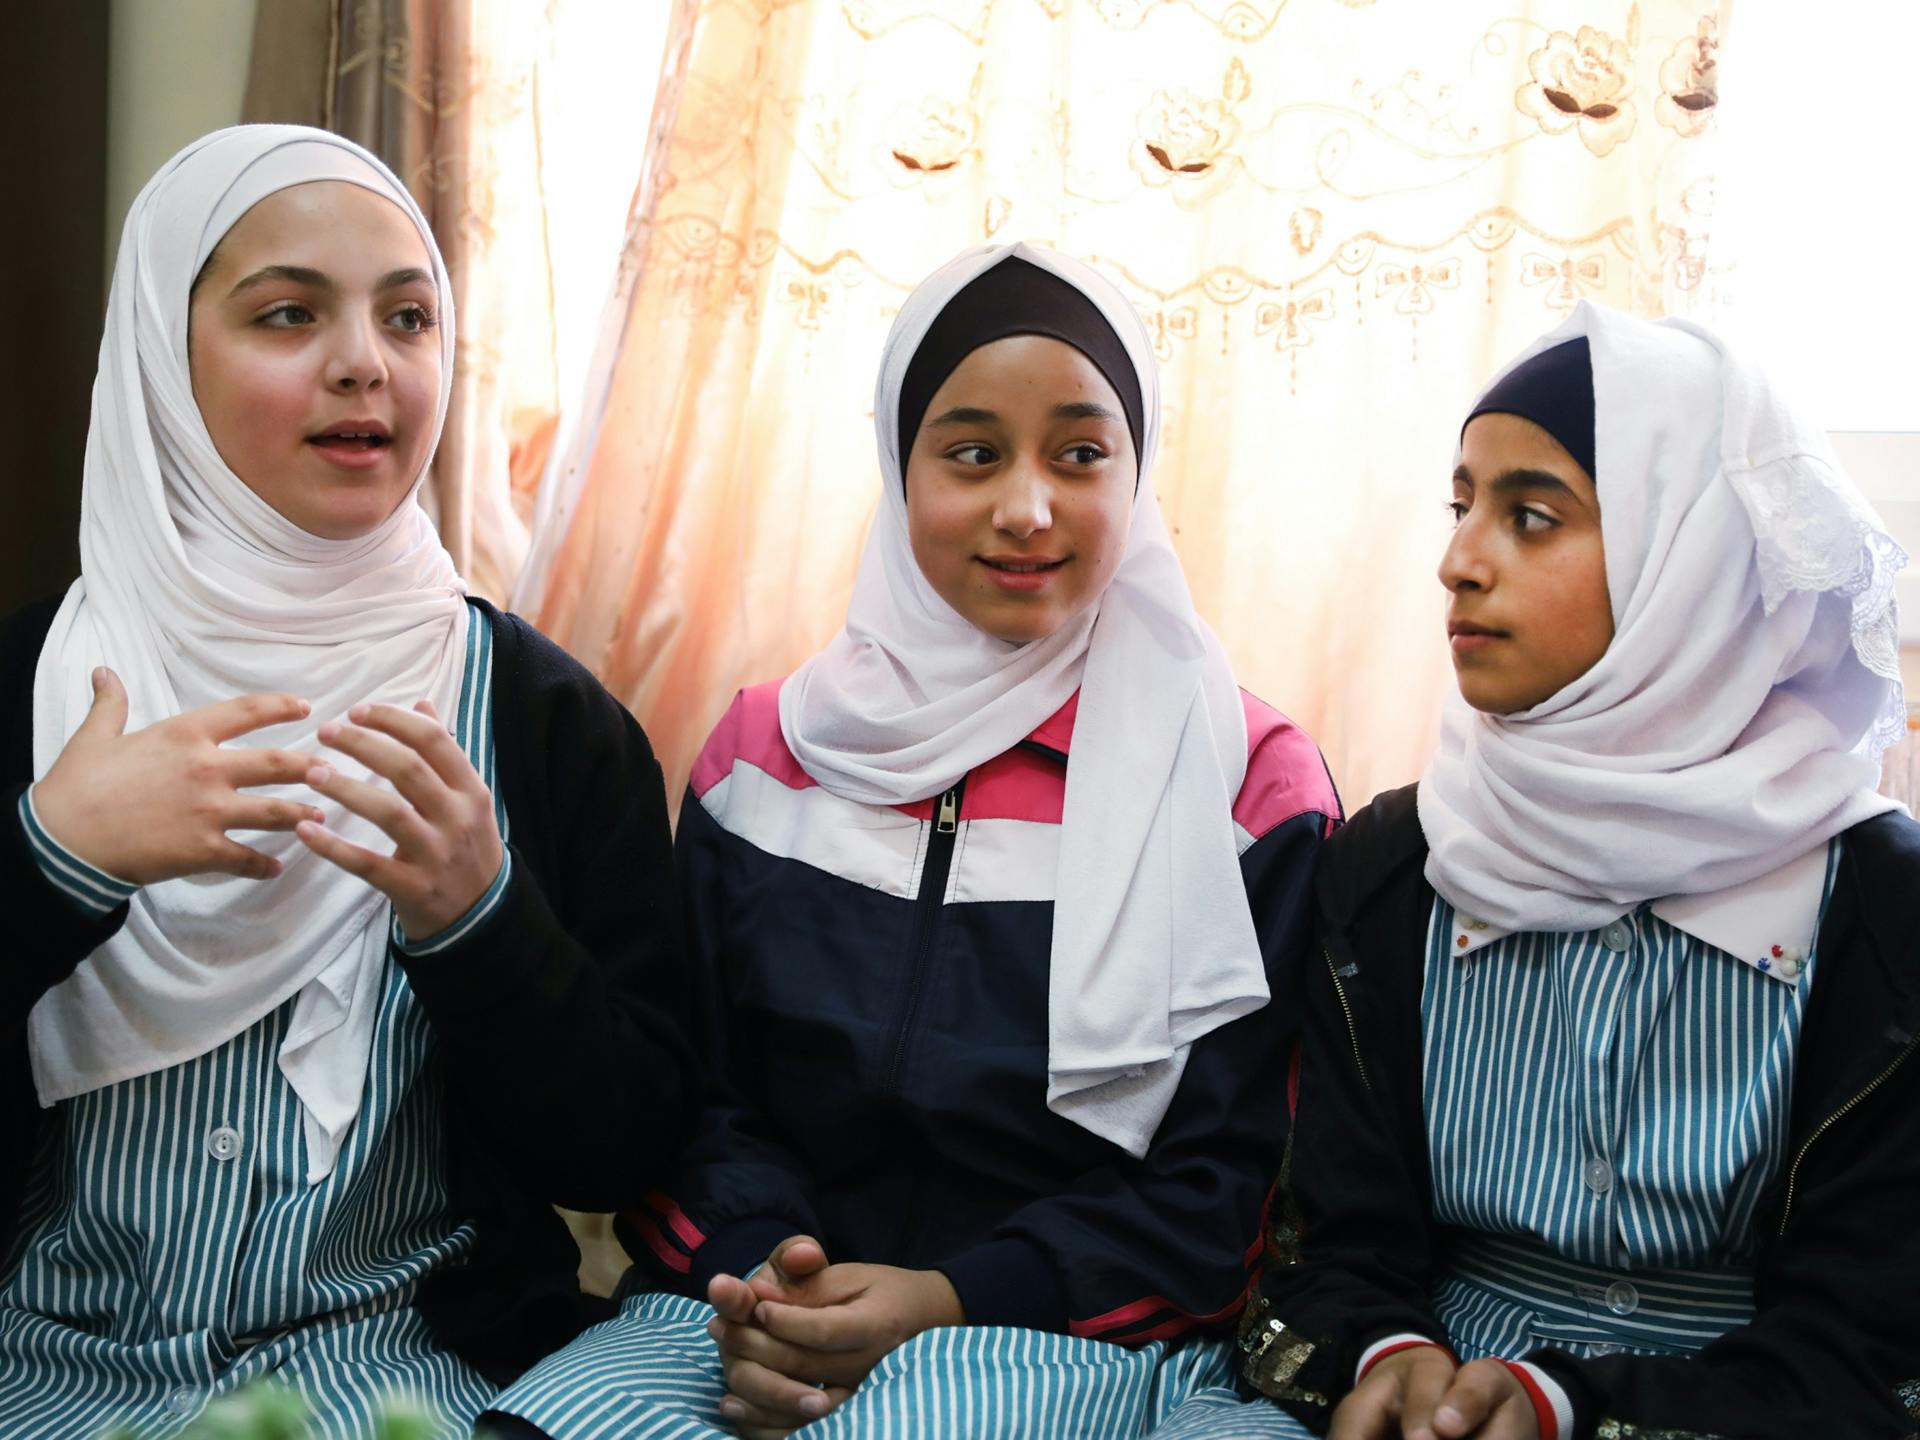 Tre unga flickor i hijab pratar och gestikulerar. Bakom dem syns ett fönster med en spetsgardin.